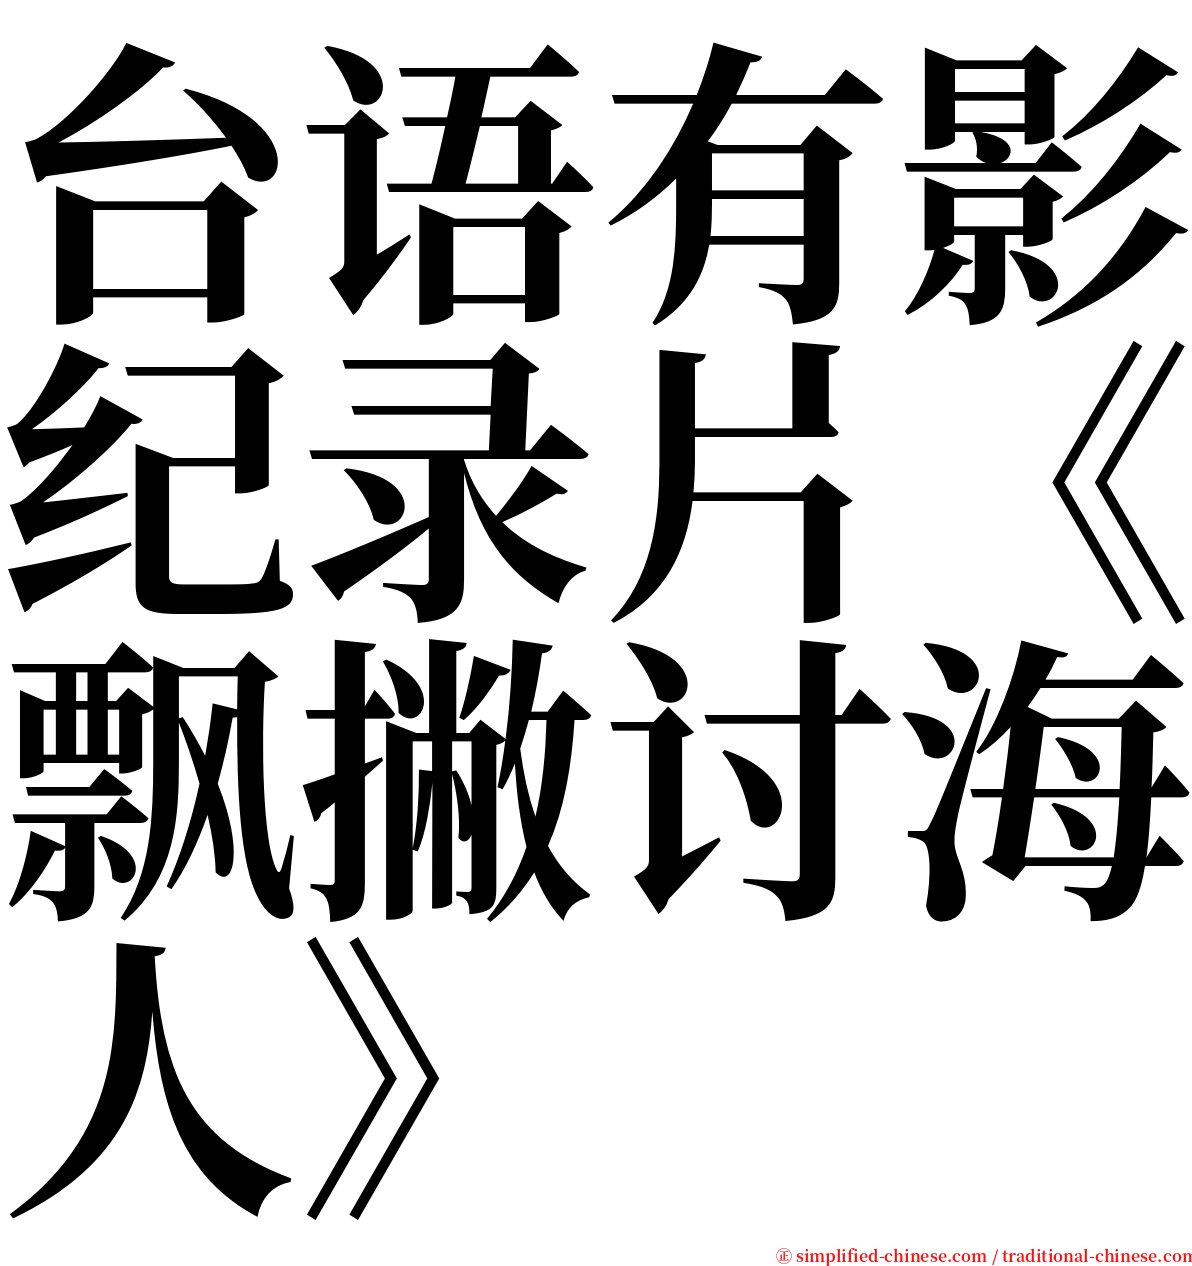 台语有影纪录片《飘撇讨海人》 serif font